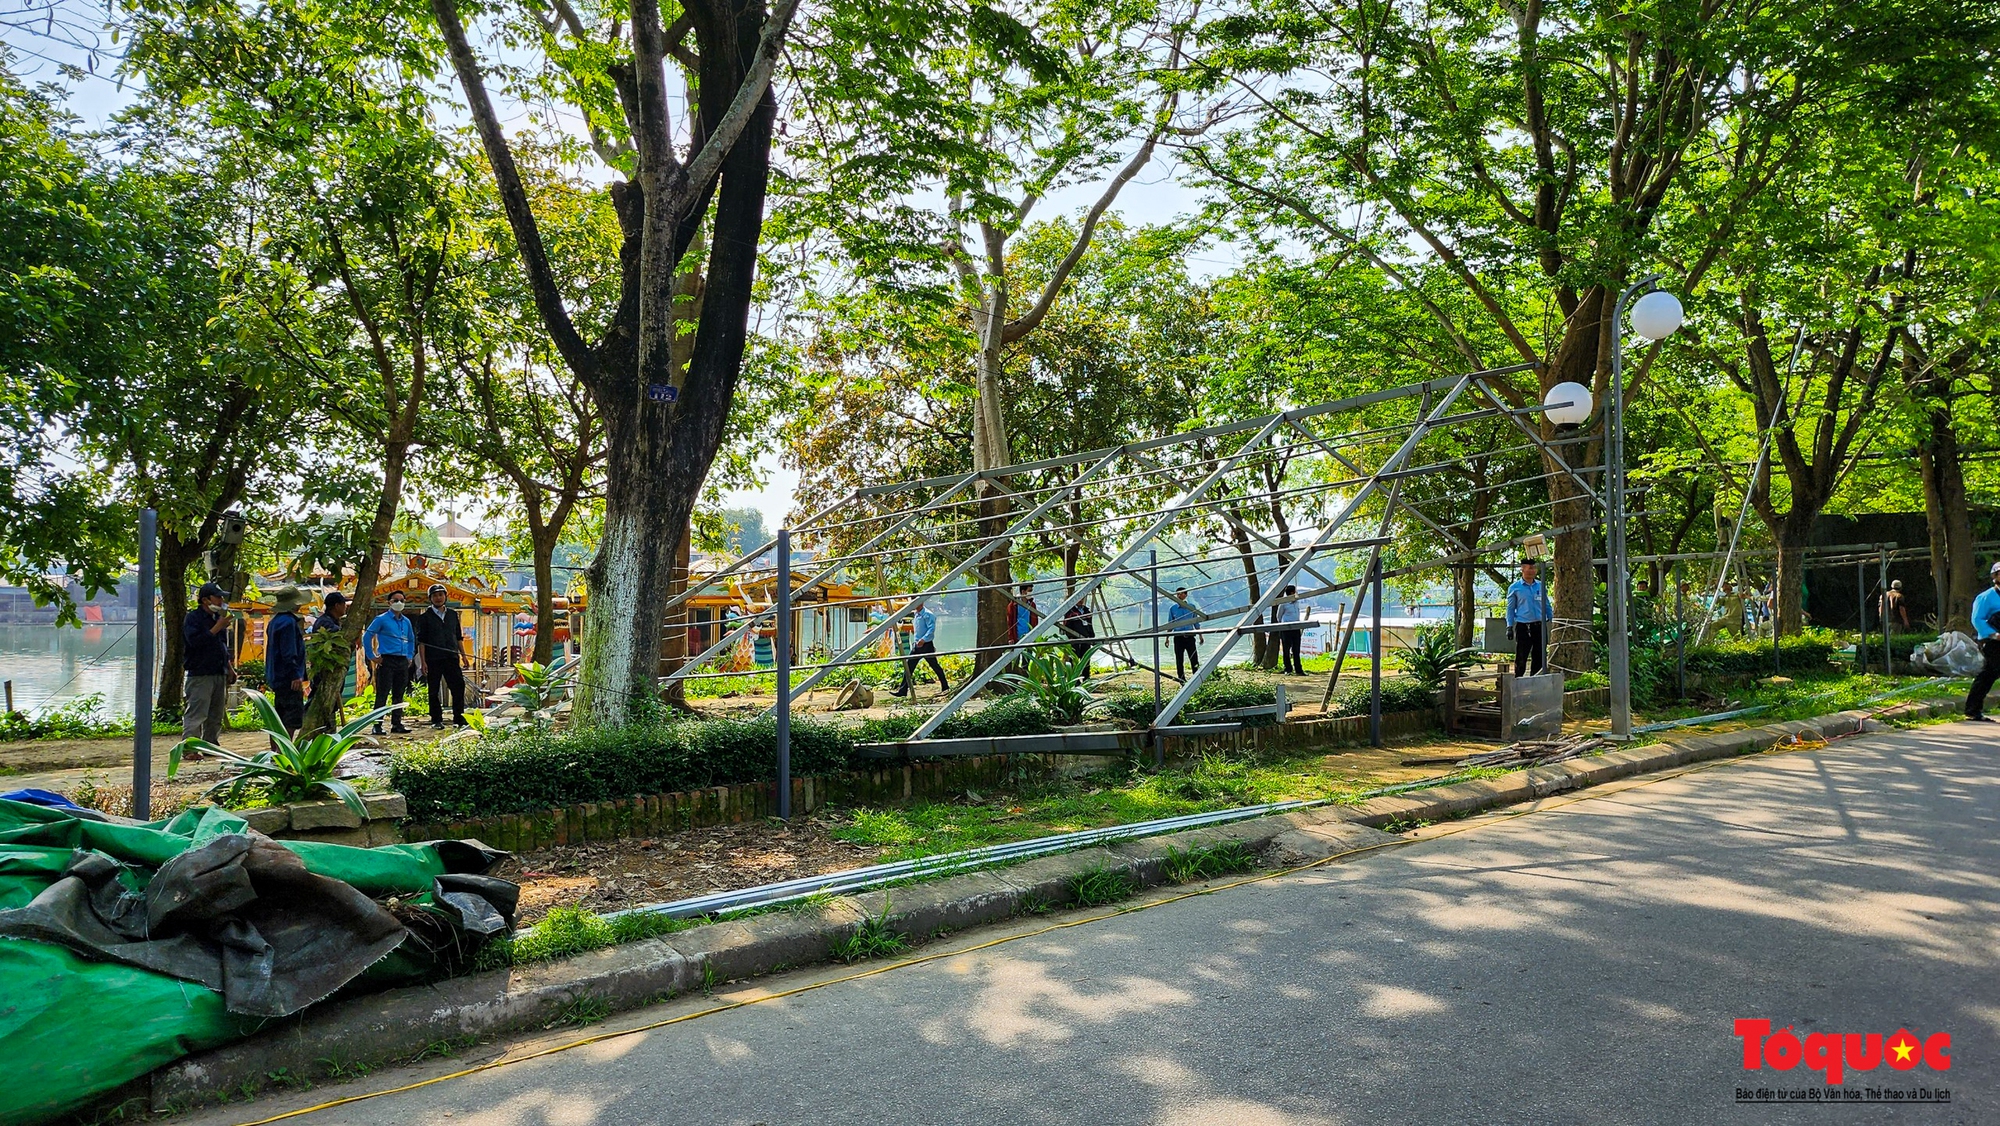 Mạnh tay xử lý hàng quán lấn chiếm trái phép, trả lại không gian cho công viên Trịnh Công Sơn - Ảnh 6.